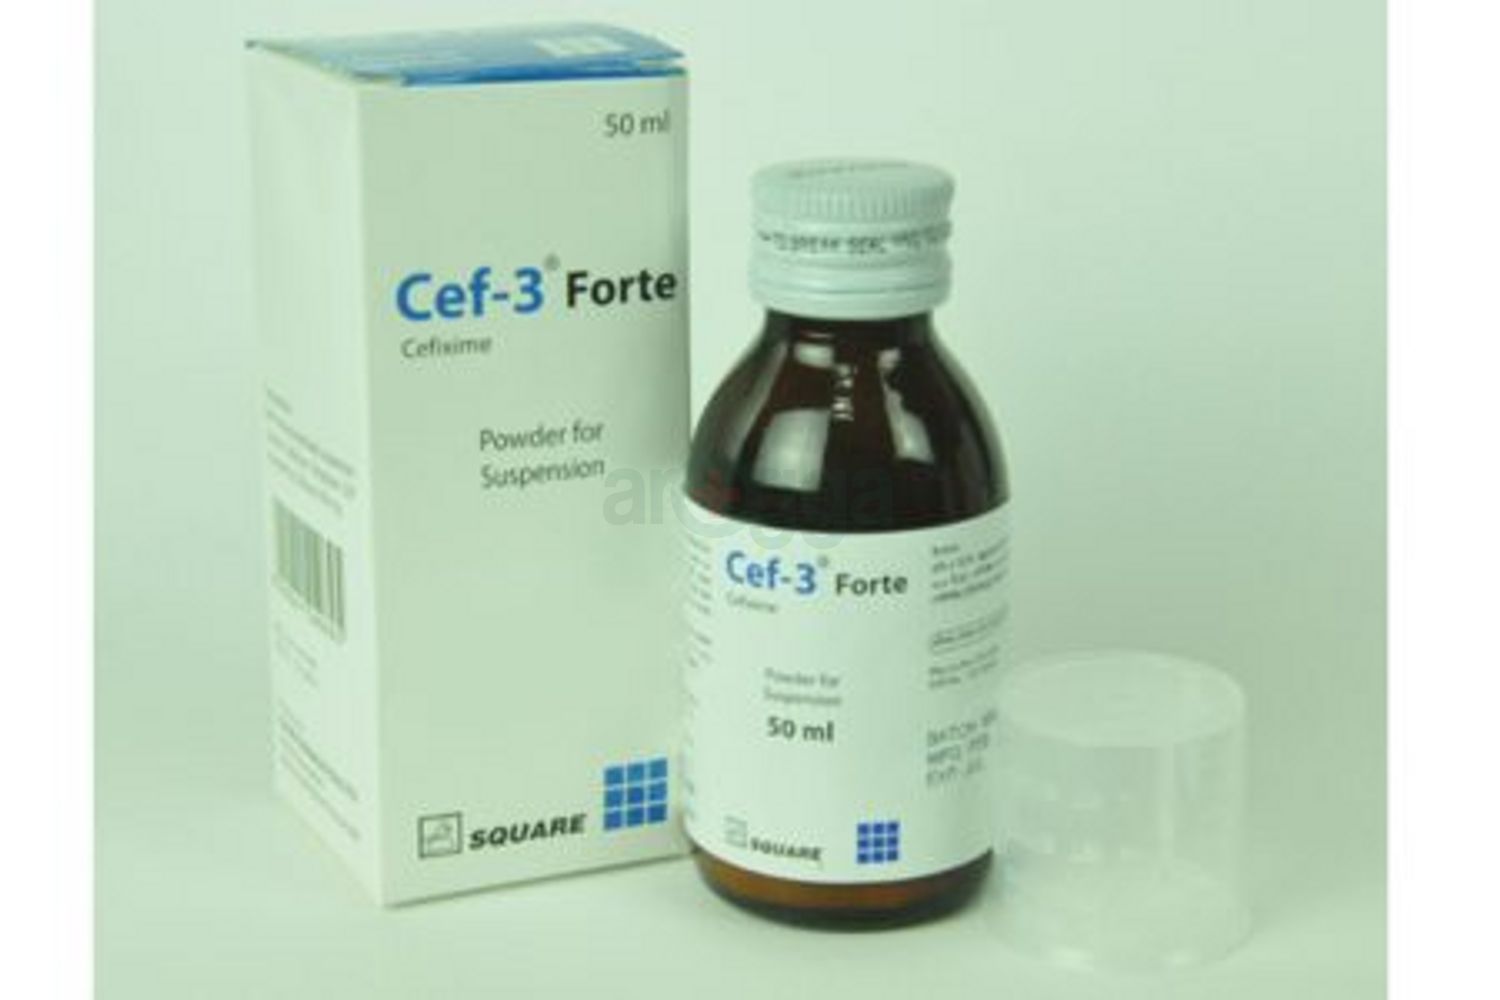 Cef-3 Forte